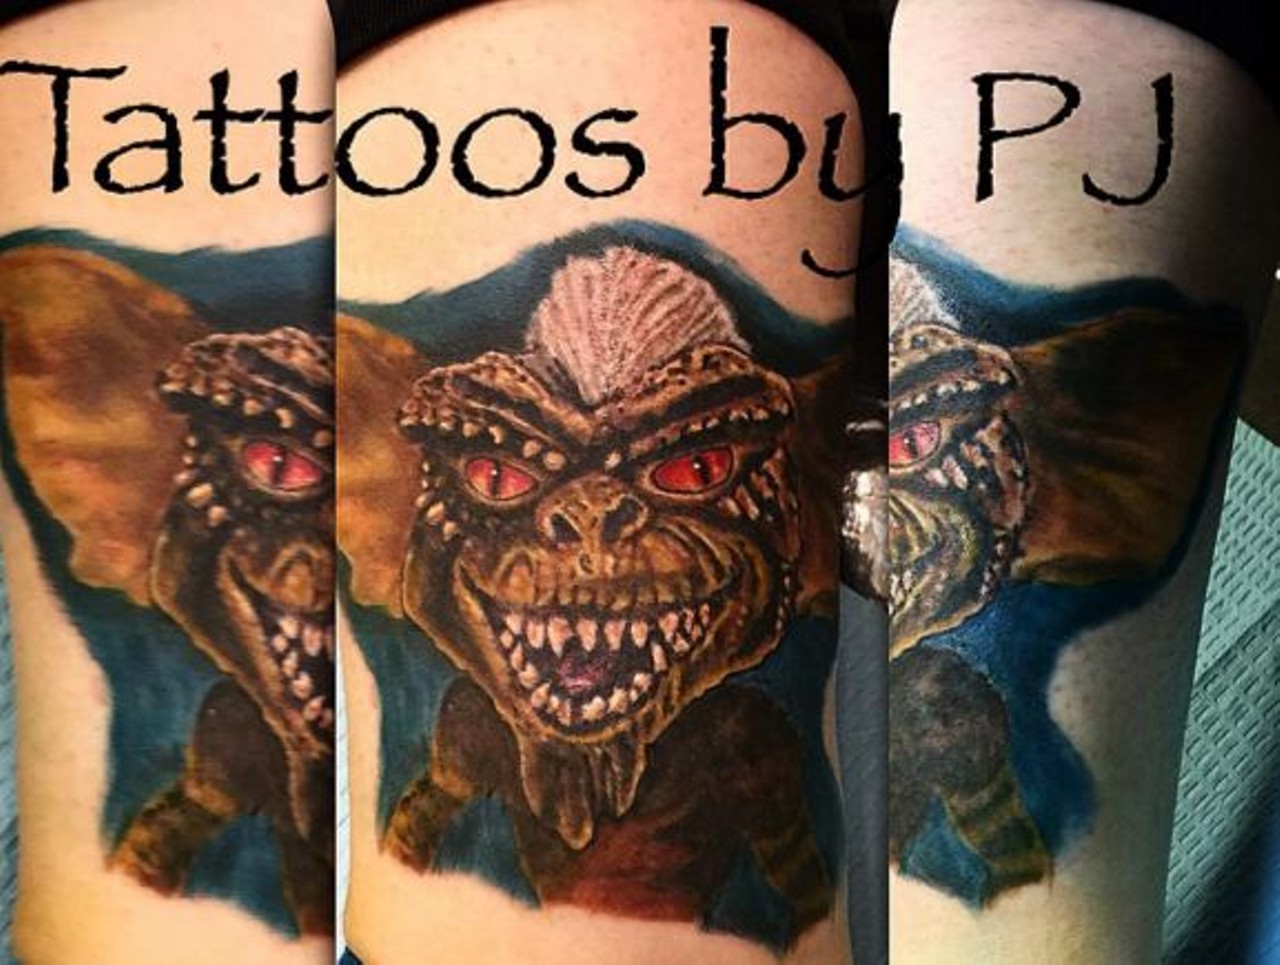 PJ Piel - tattoosbypjstl
St. Louis Ink Tattoo Studio 2
12763 New Halls Ferry Road, Florissant, MO 63033
(314) 395-2225